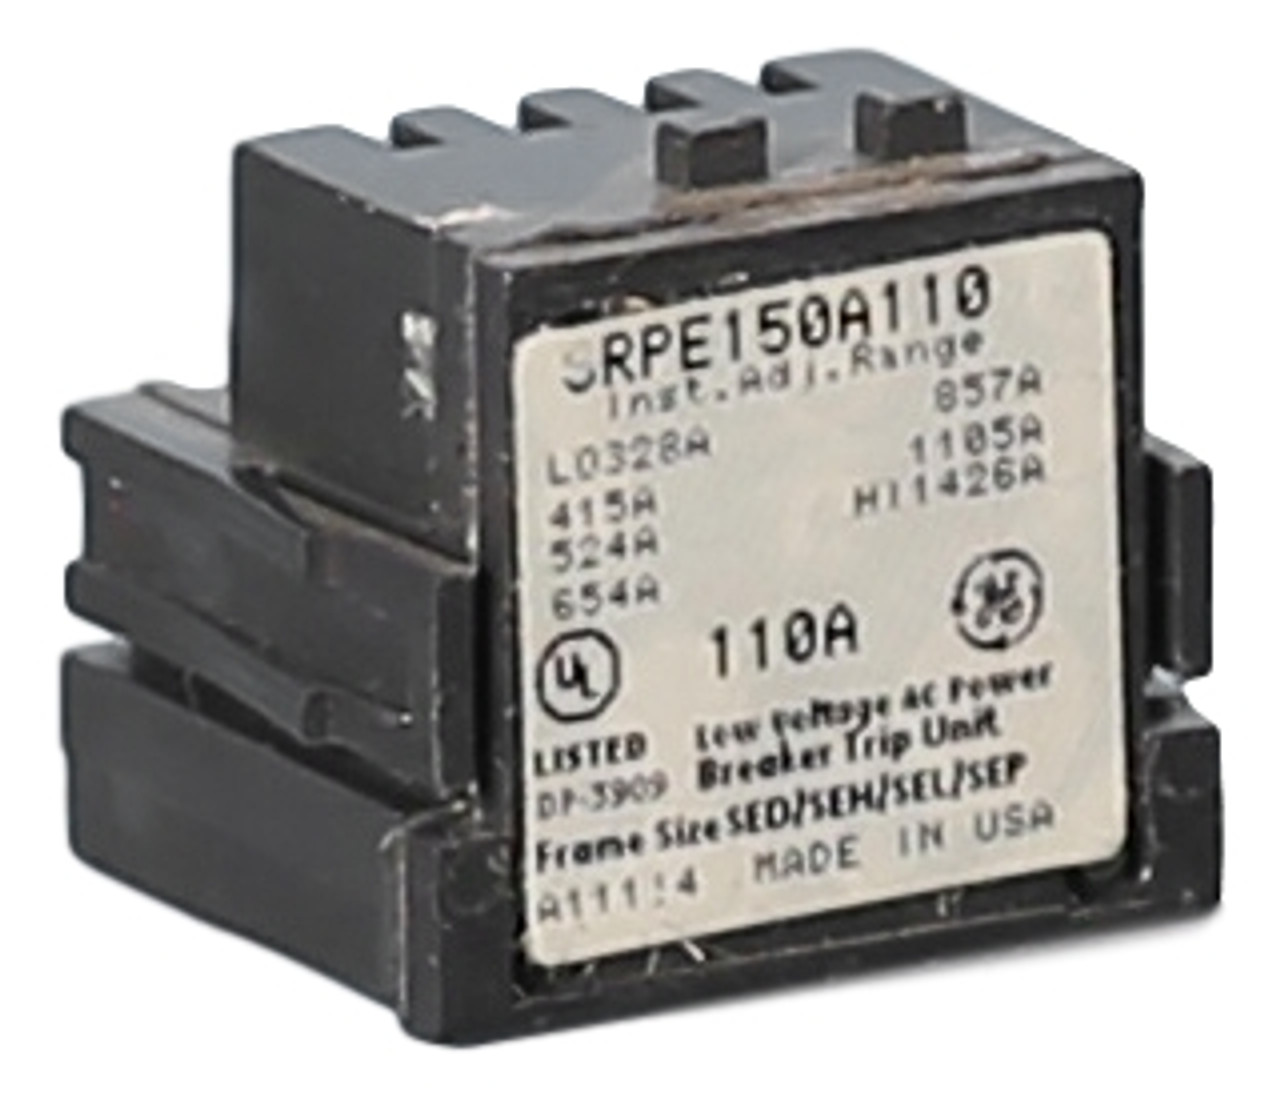 SRPE150A110
110A Rating Plug for SE150 frame